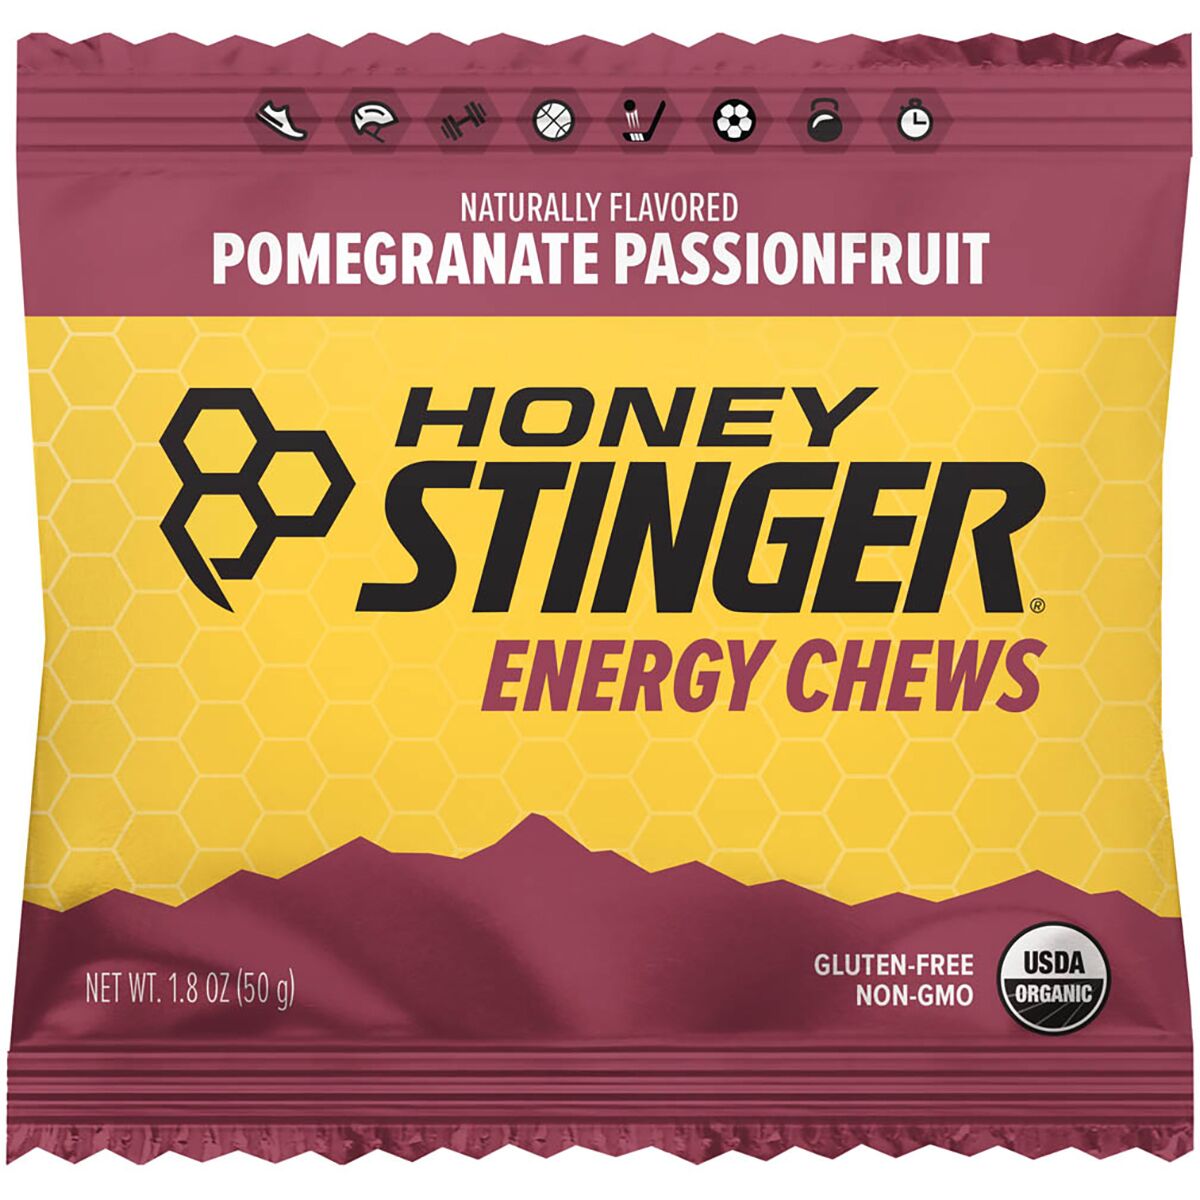 Honey Stinger Organic Energy Chews - 12 Pack Pomegranate Passion Fruit, One Size